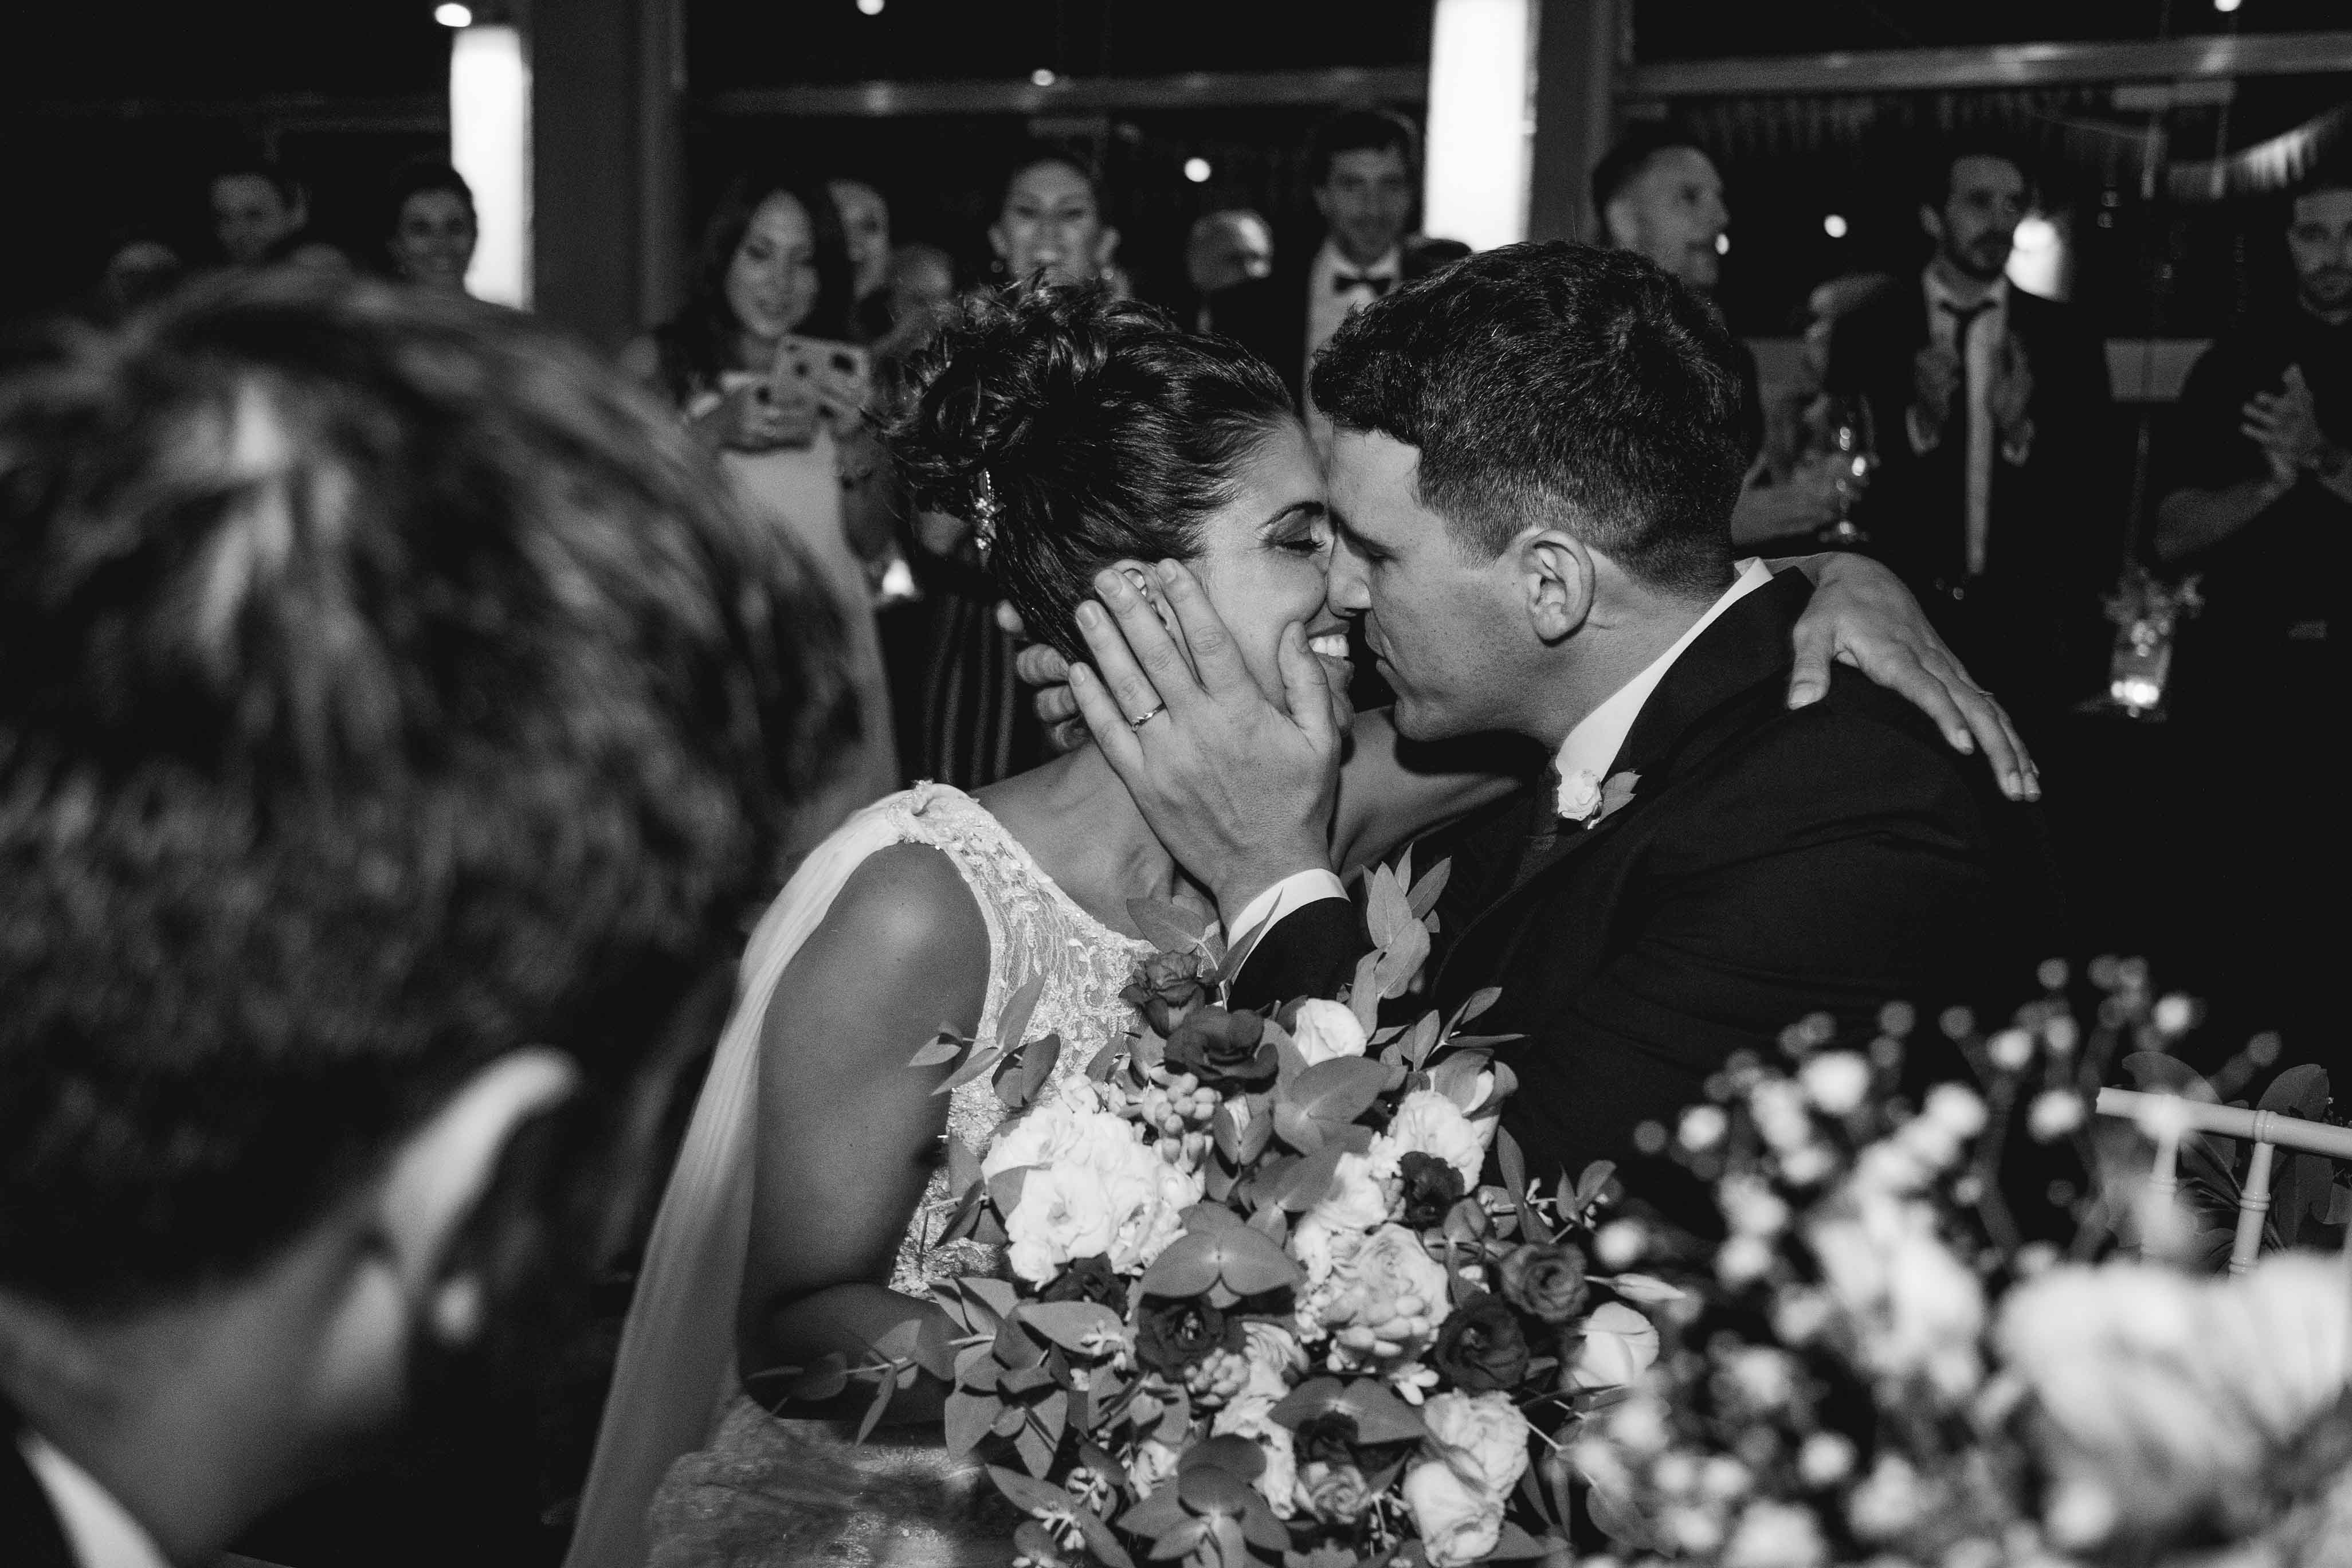 Fotos de la boda de Debi y Bruno en Rosario realizadas por Bucle Fotografias Flor Bosio y Caro Clerici